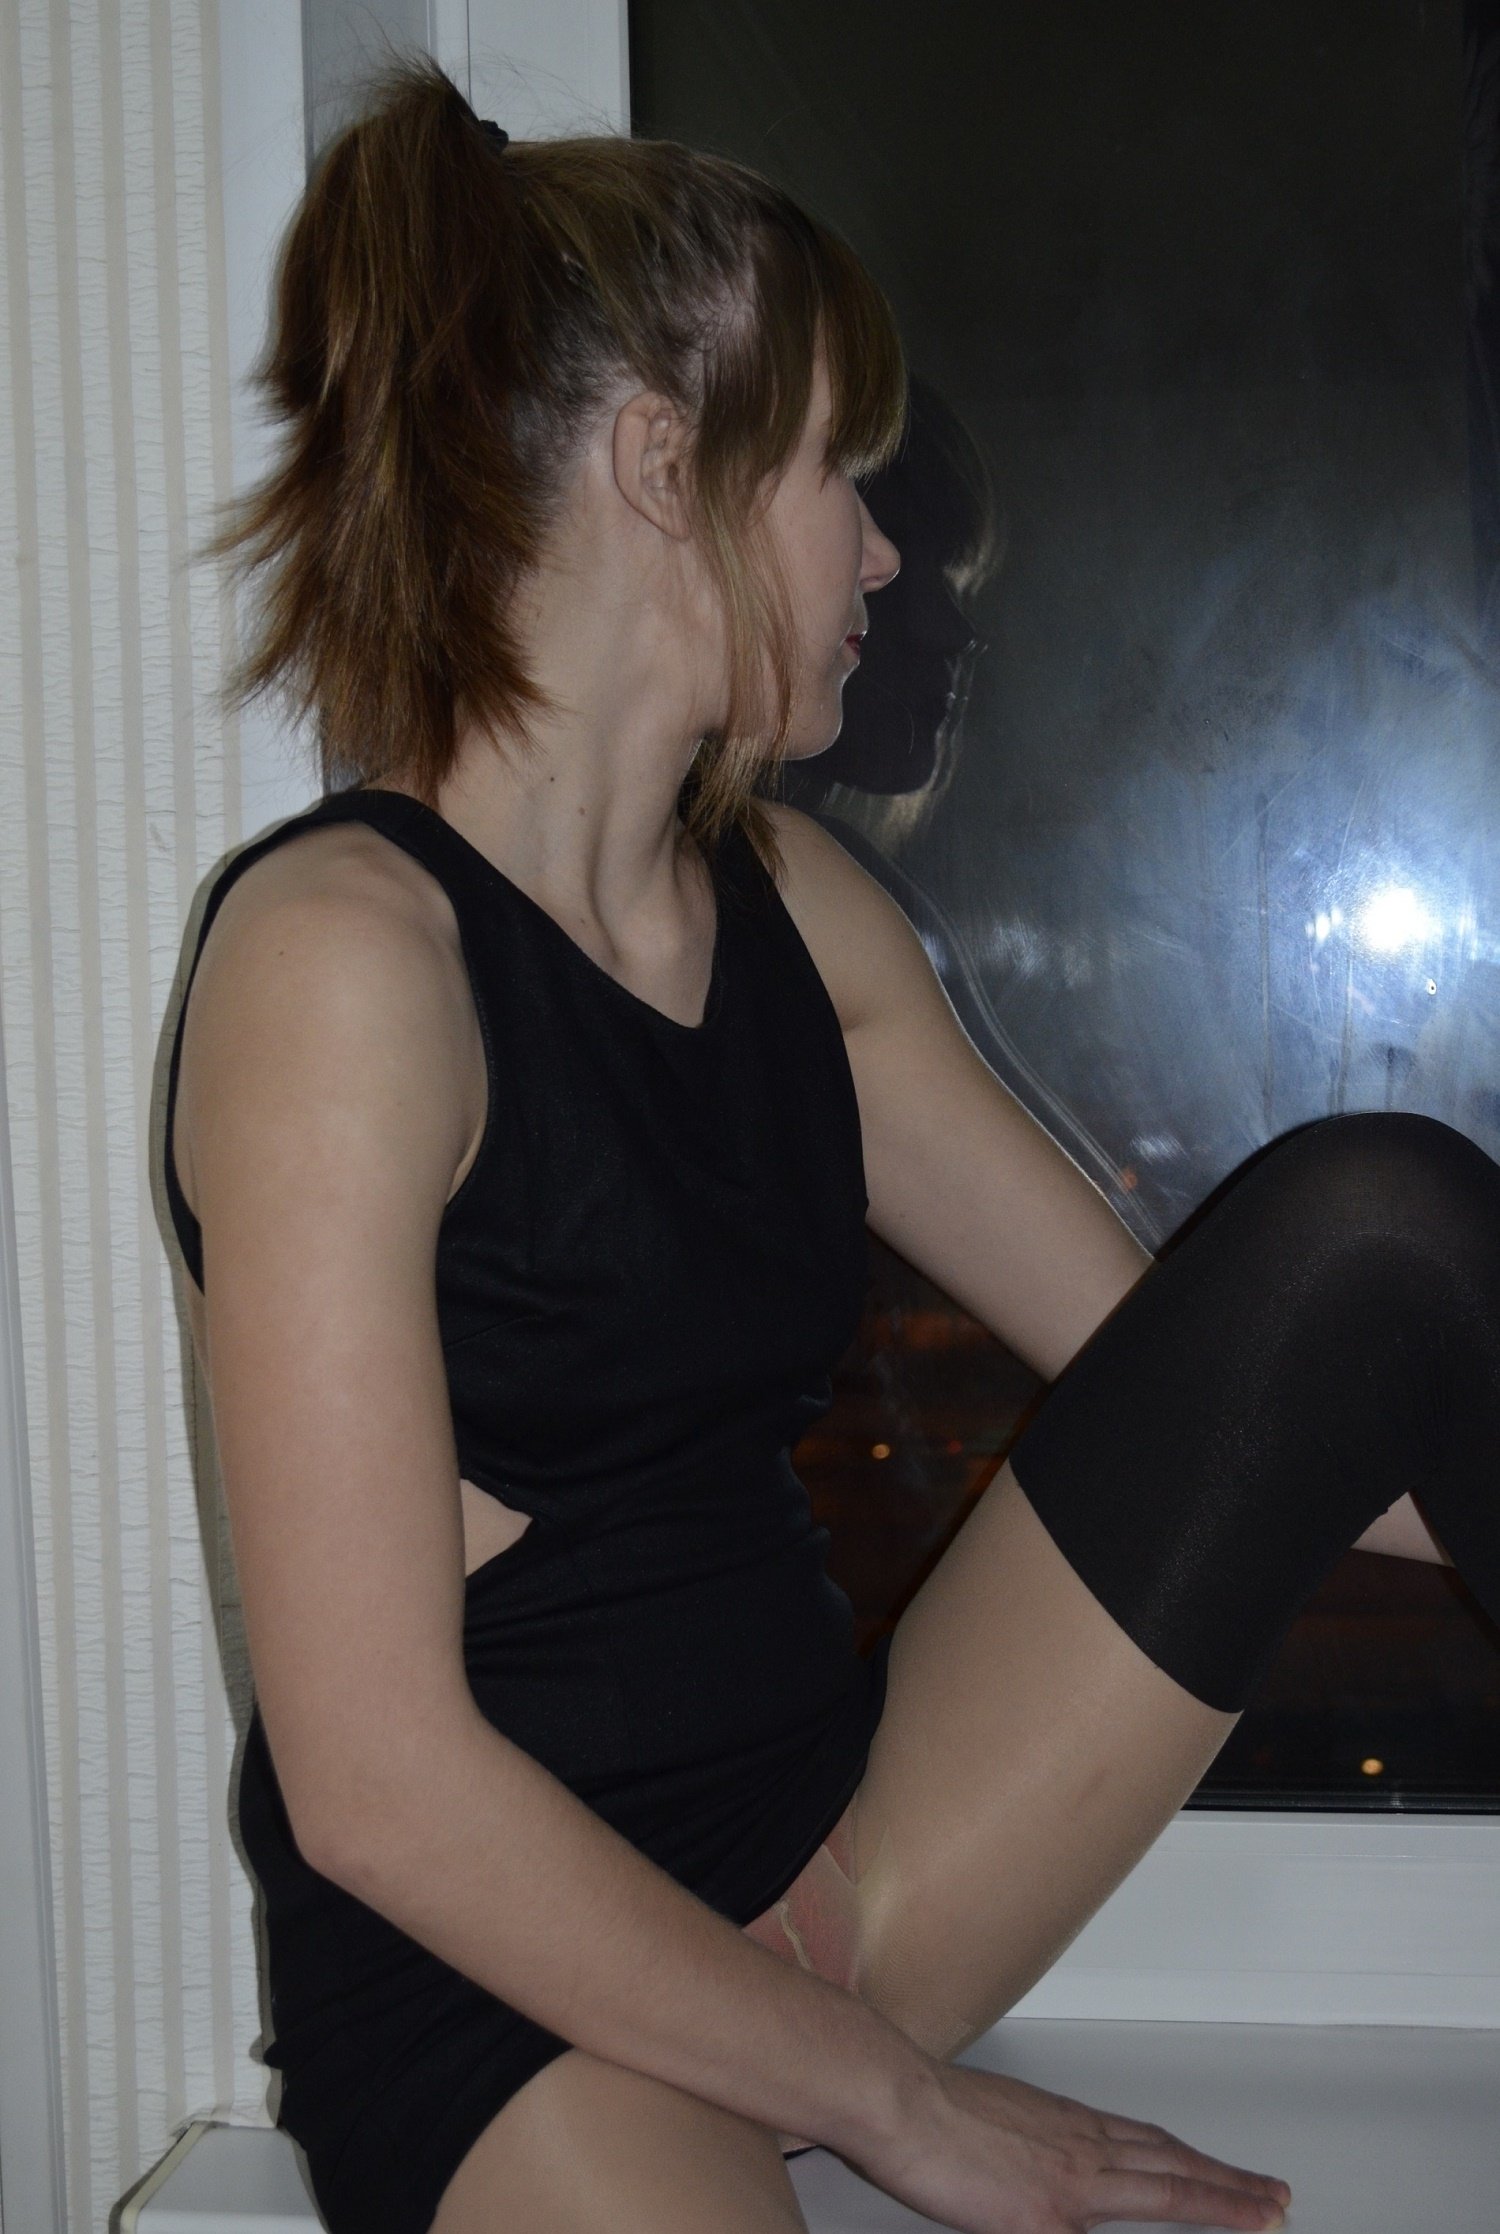 Проститутка Света возрастом 21 с ростом 168 см для интима в Москве